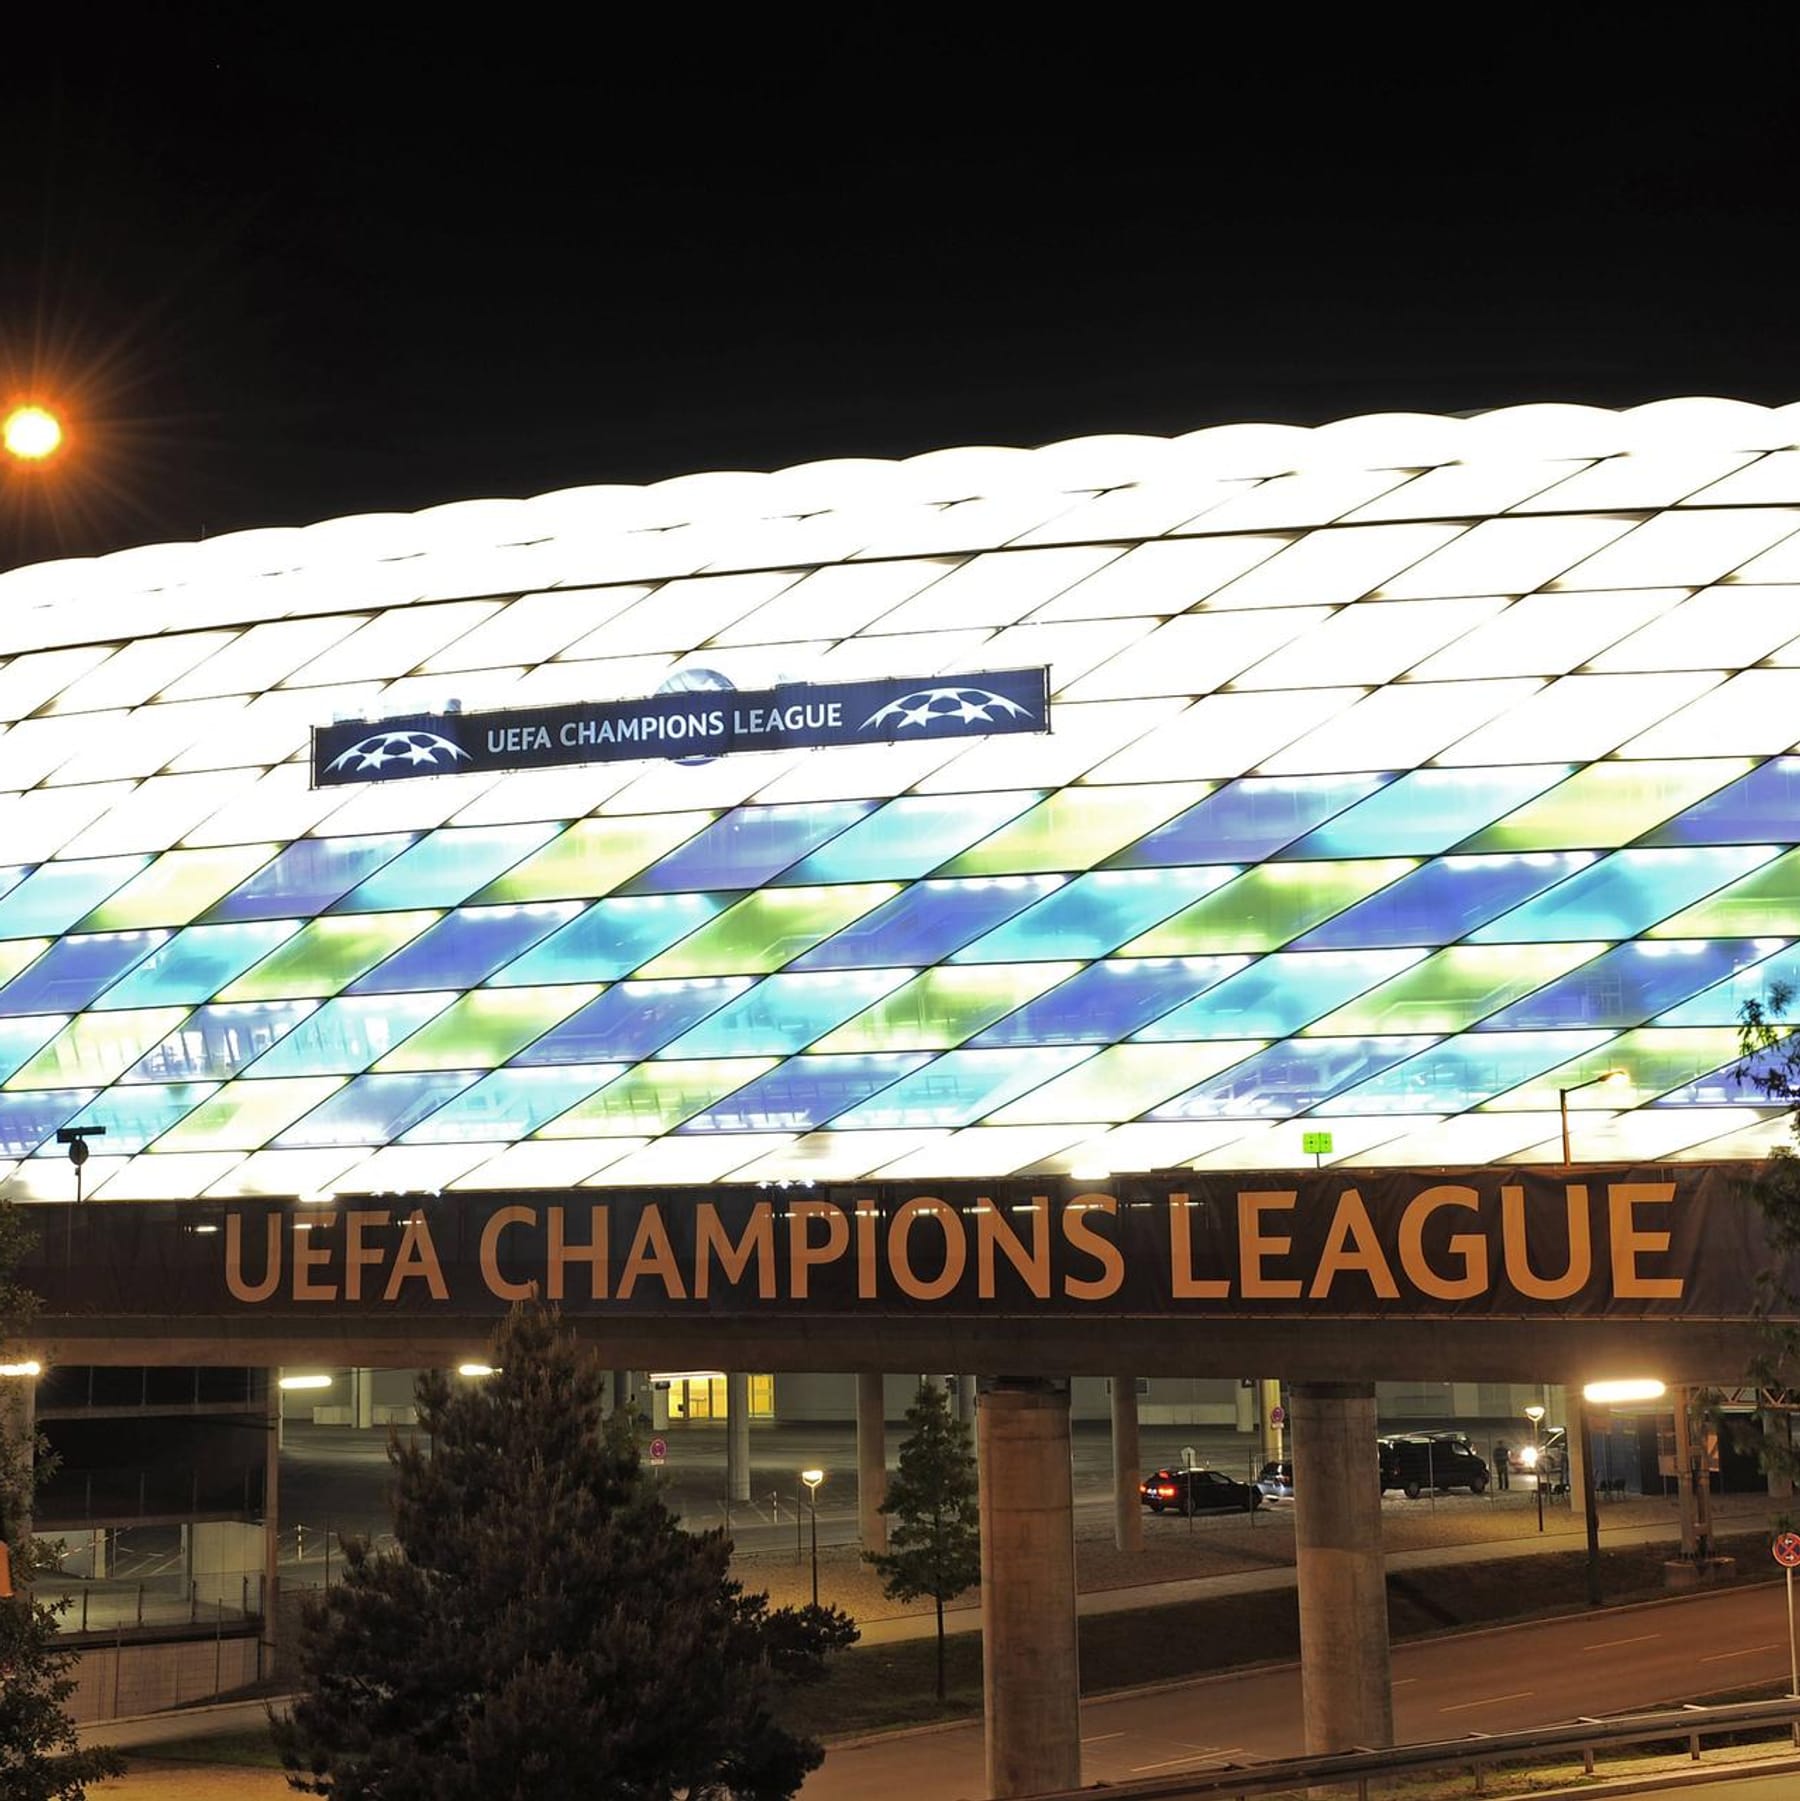 Champions-League-Finale 2021 München beschließt offenbar Bewerbung